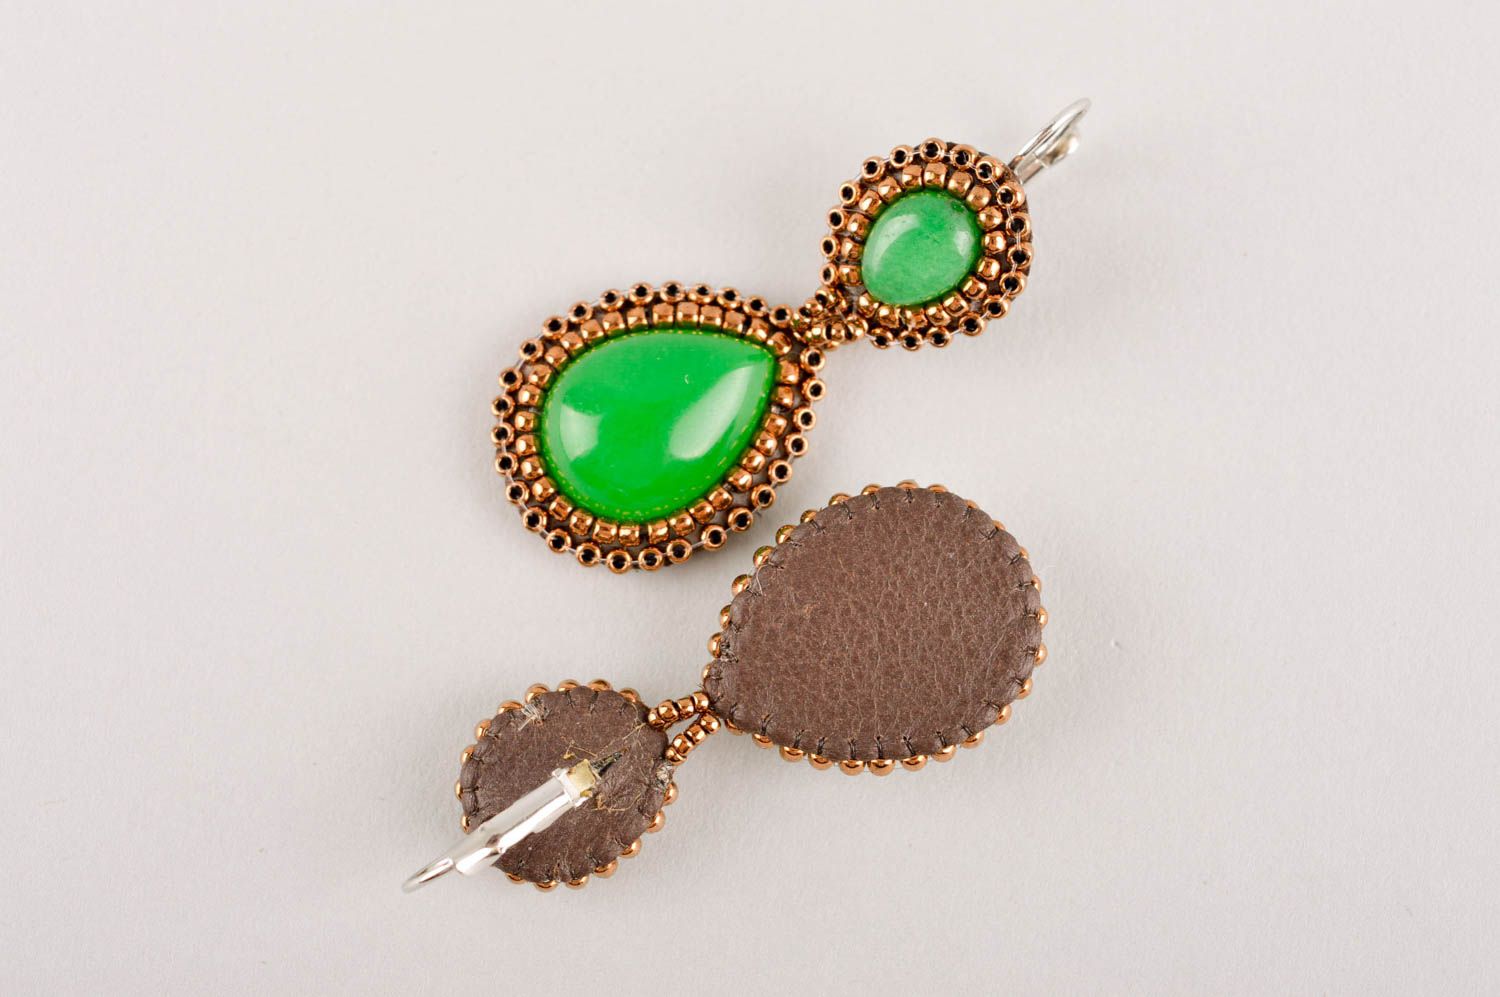 Handmade earrings designer earrings designer jewelry beaded earrings gift ideas photo 5